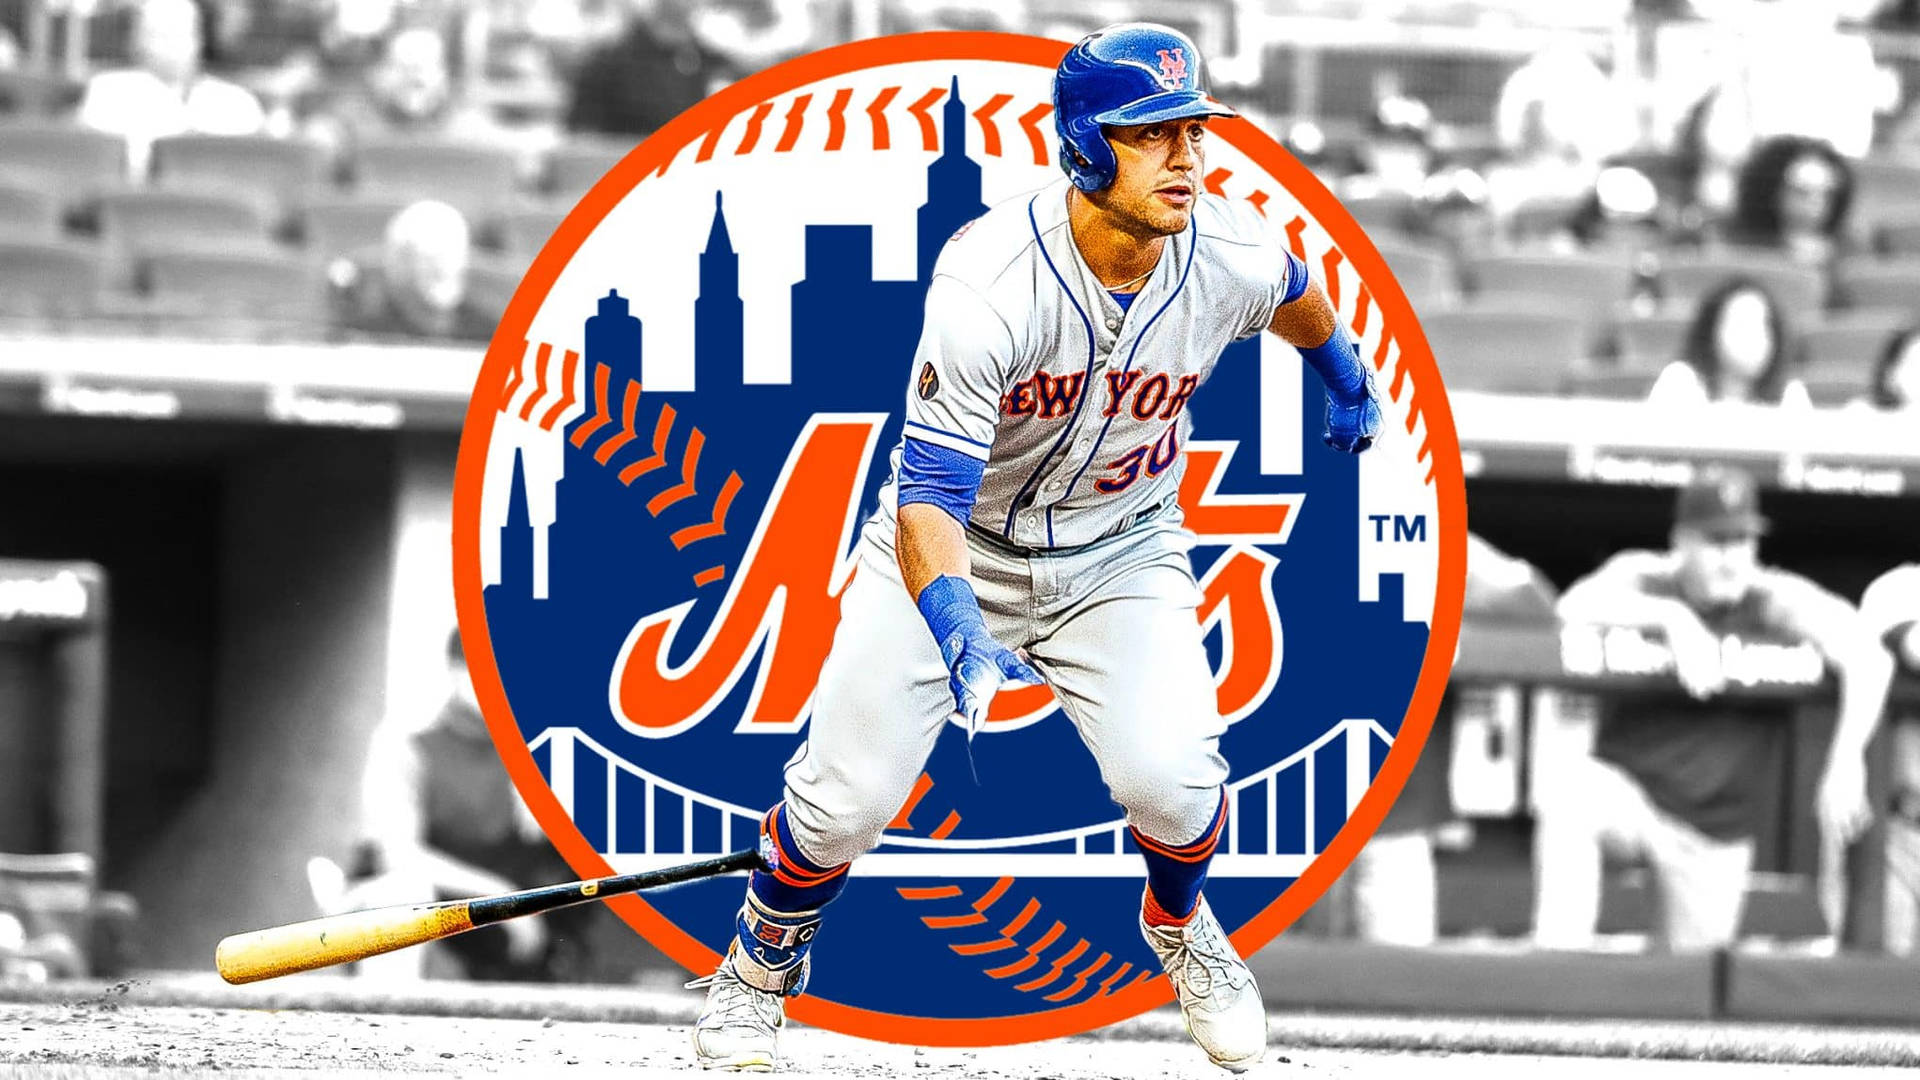 48 New York Mets Wallpapers